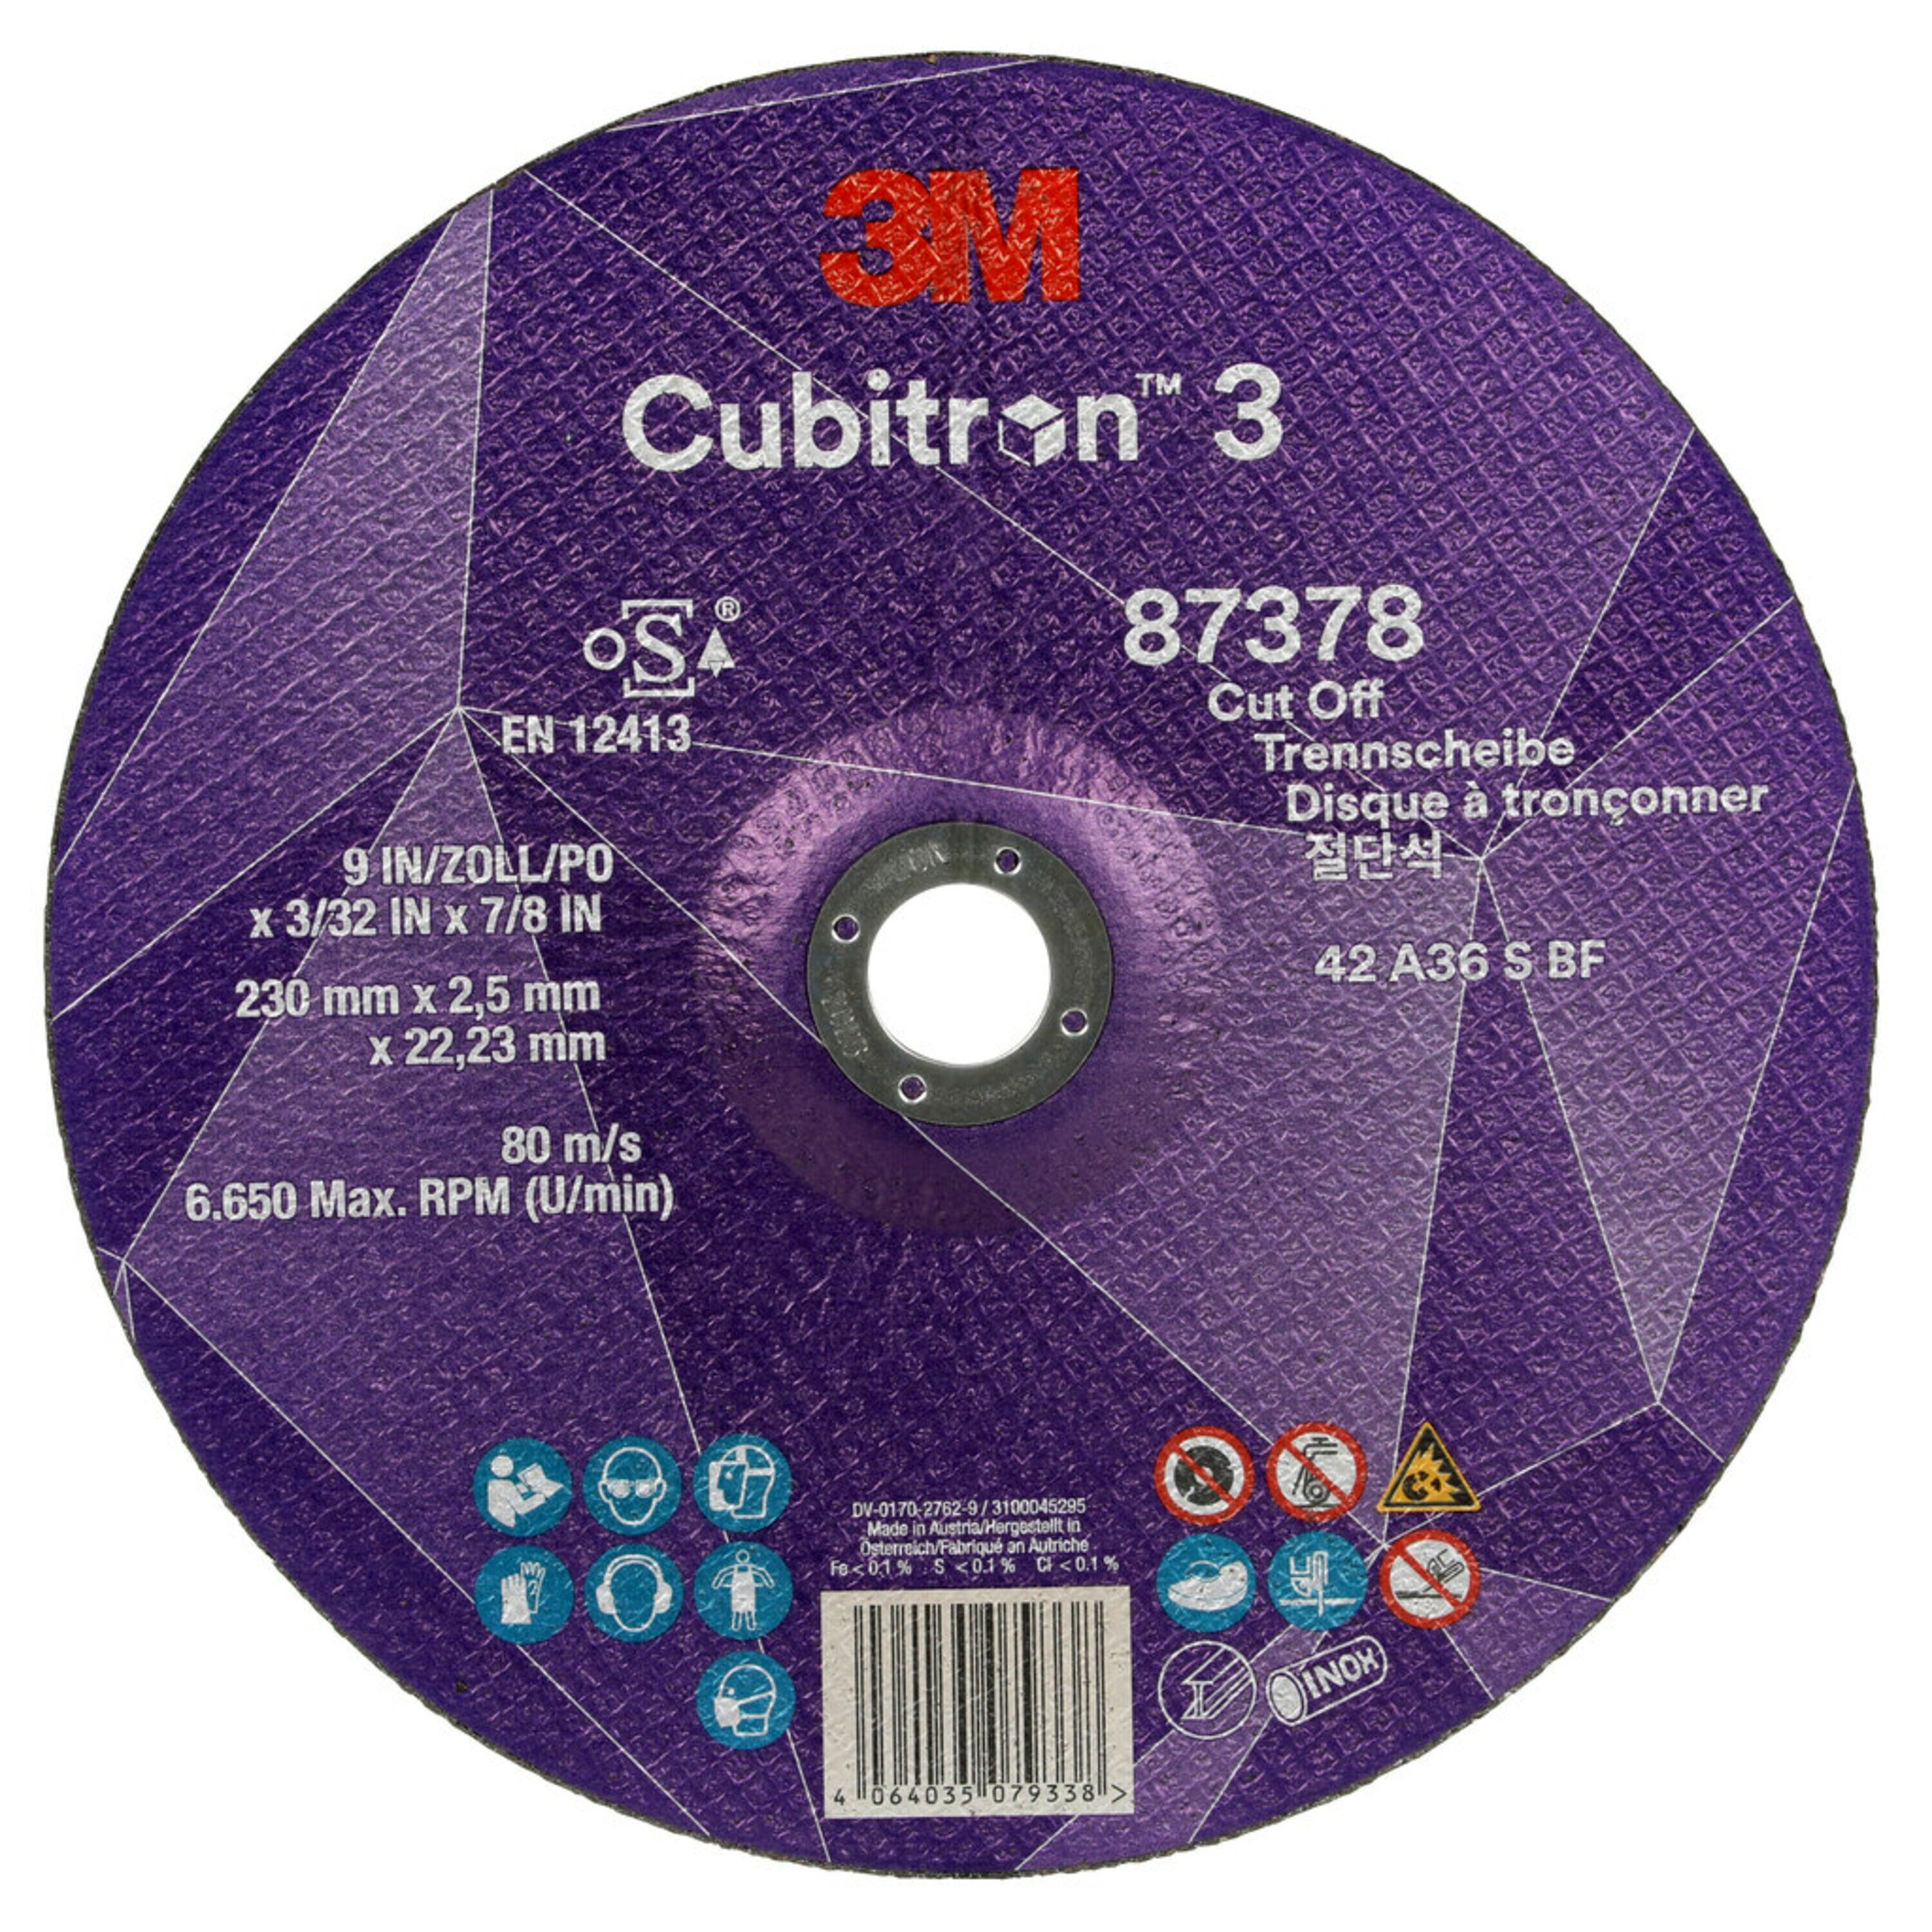 3M Cubitron 3 -leikkuukiekko, 230 mm, 2,5 mm, 22,23 mm, 36 , tyyppi 42 #87378